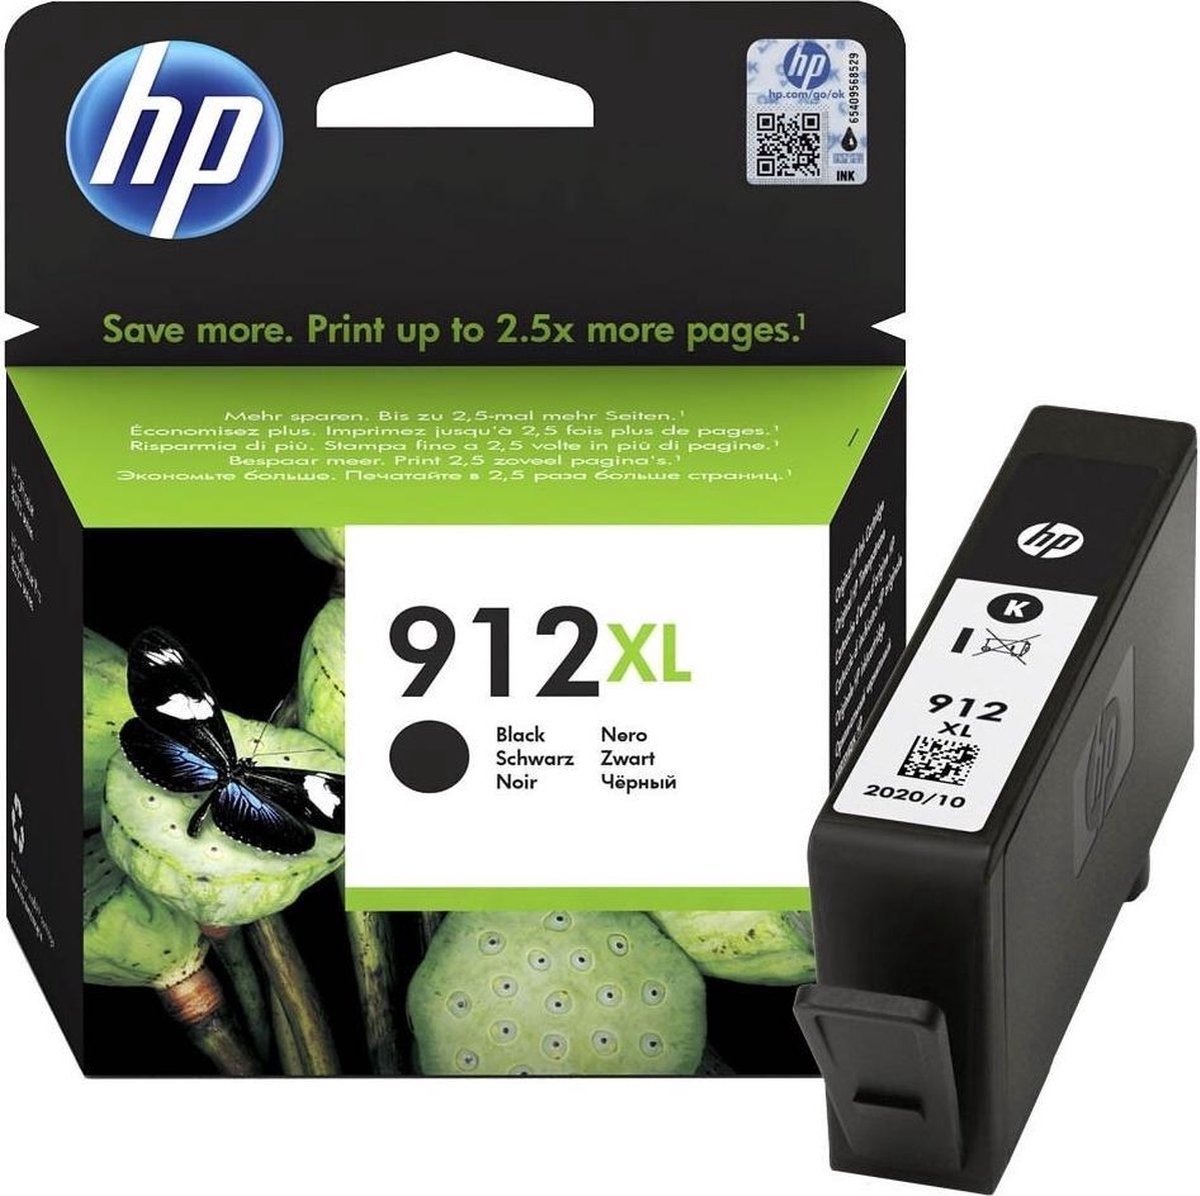 Noir Cartouche d'encre Remanufactured pour HP 912 HP 912 XL pour